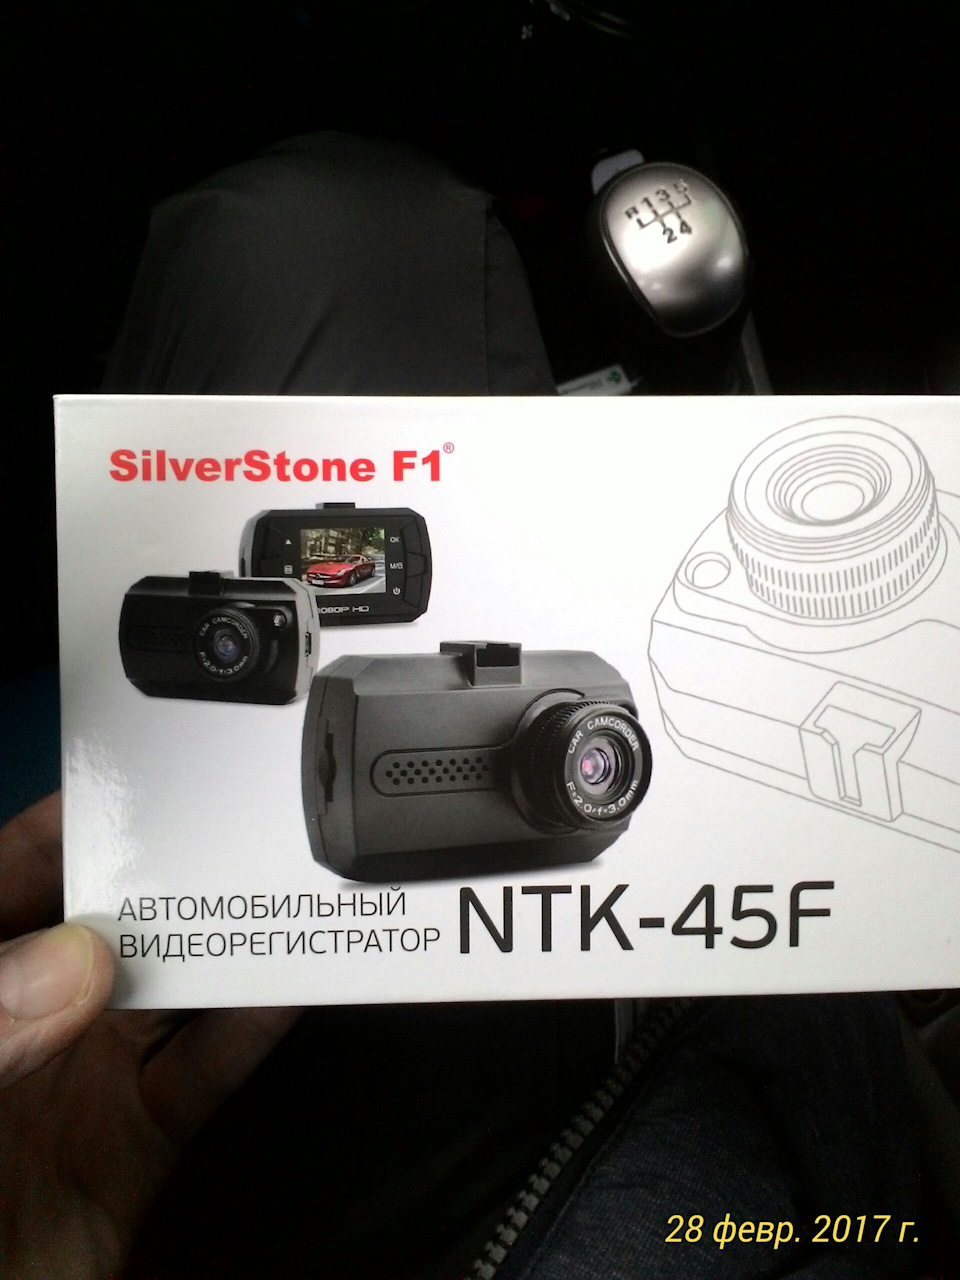 Ntk 330f видеорегистратор инструкция